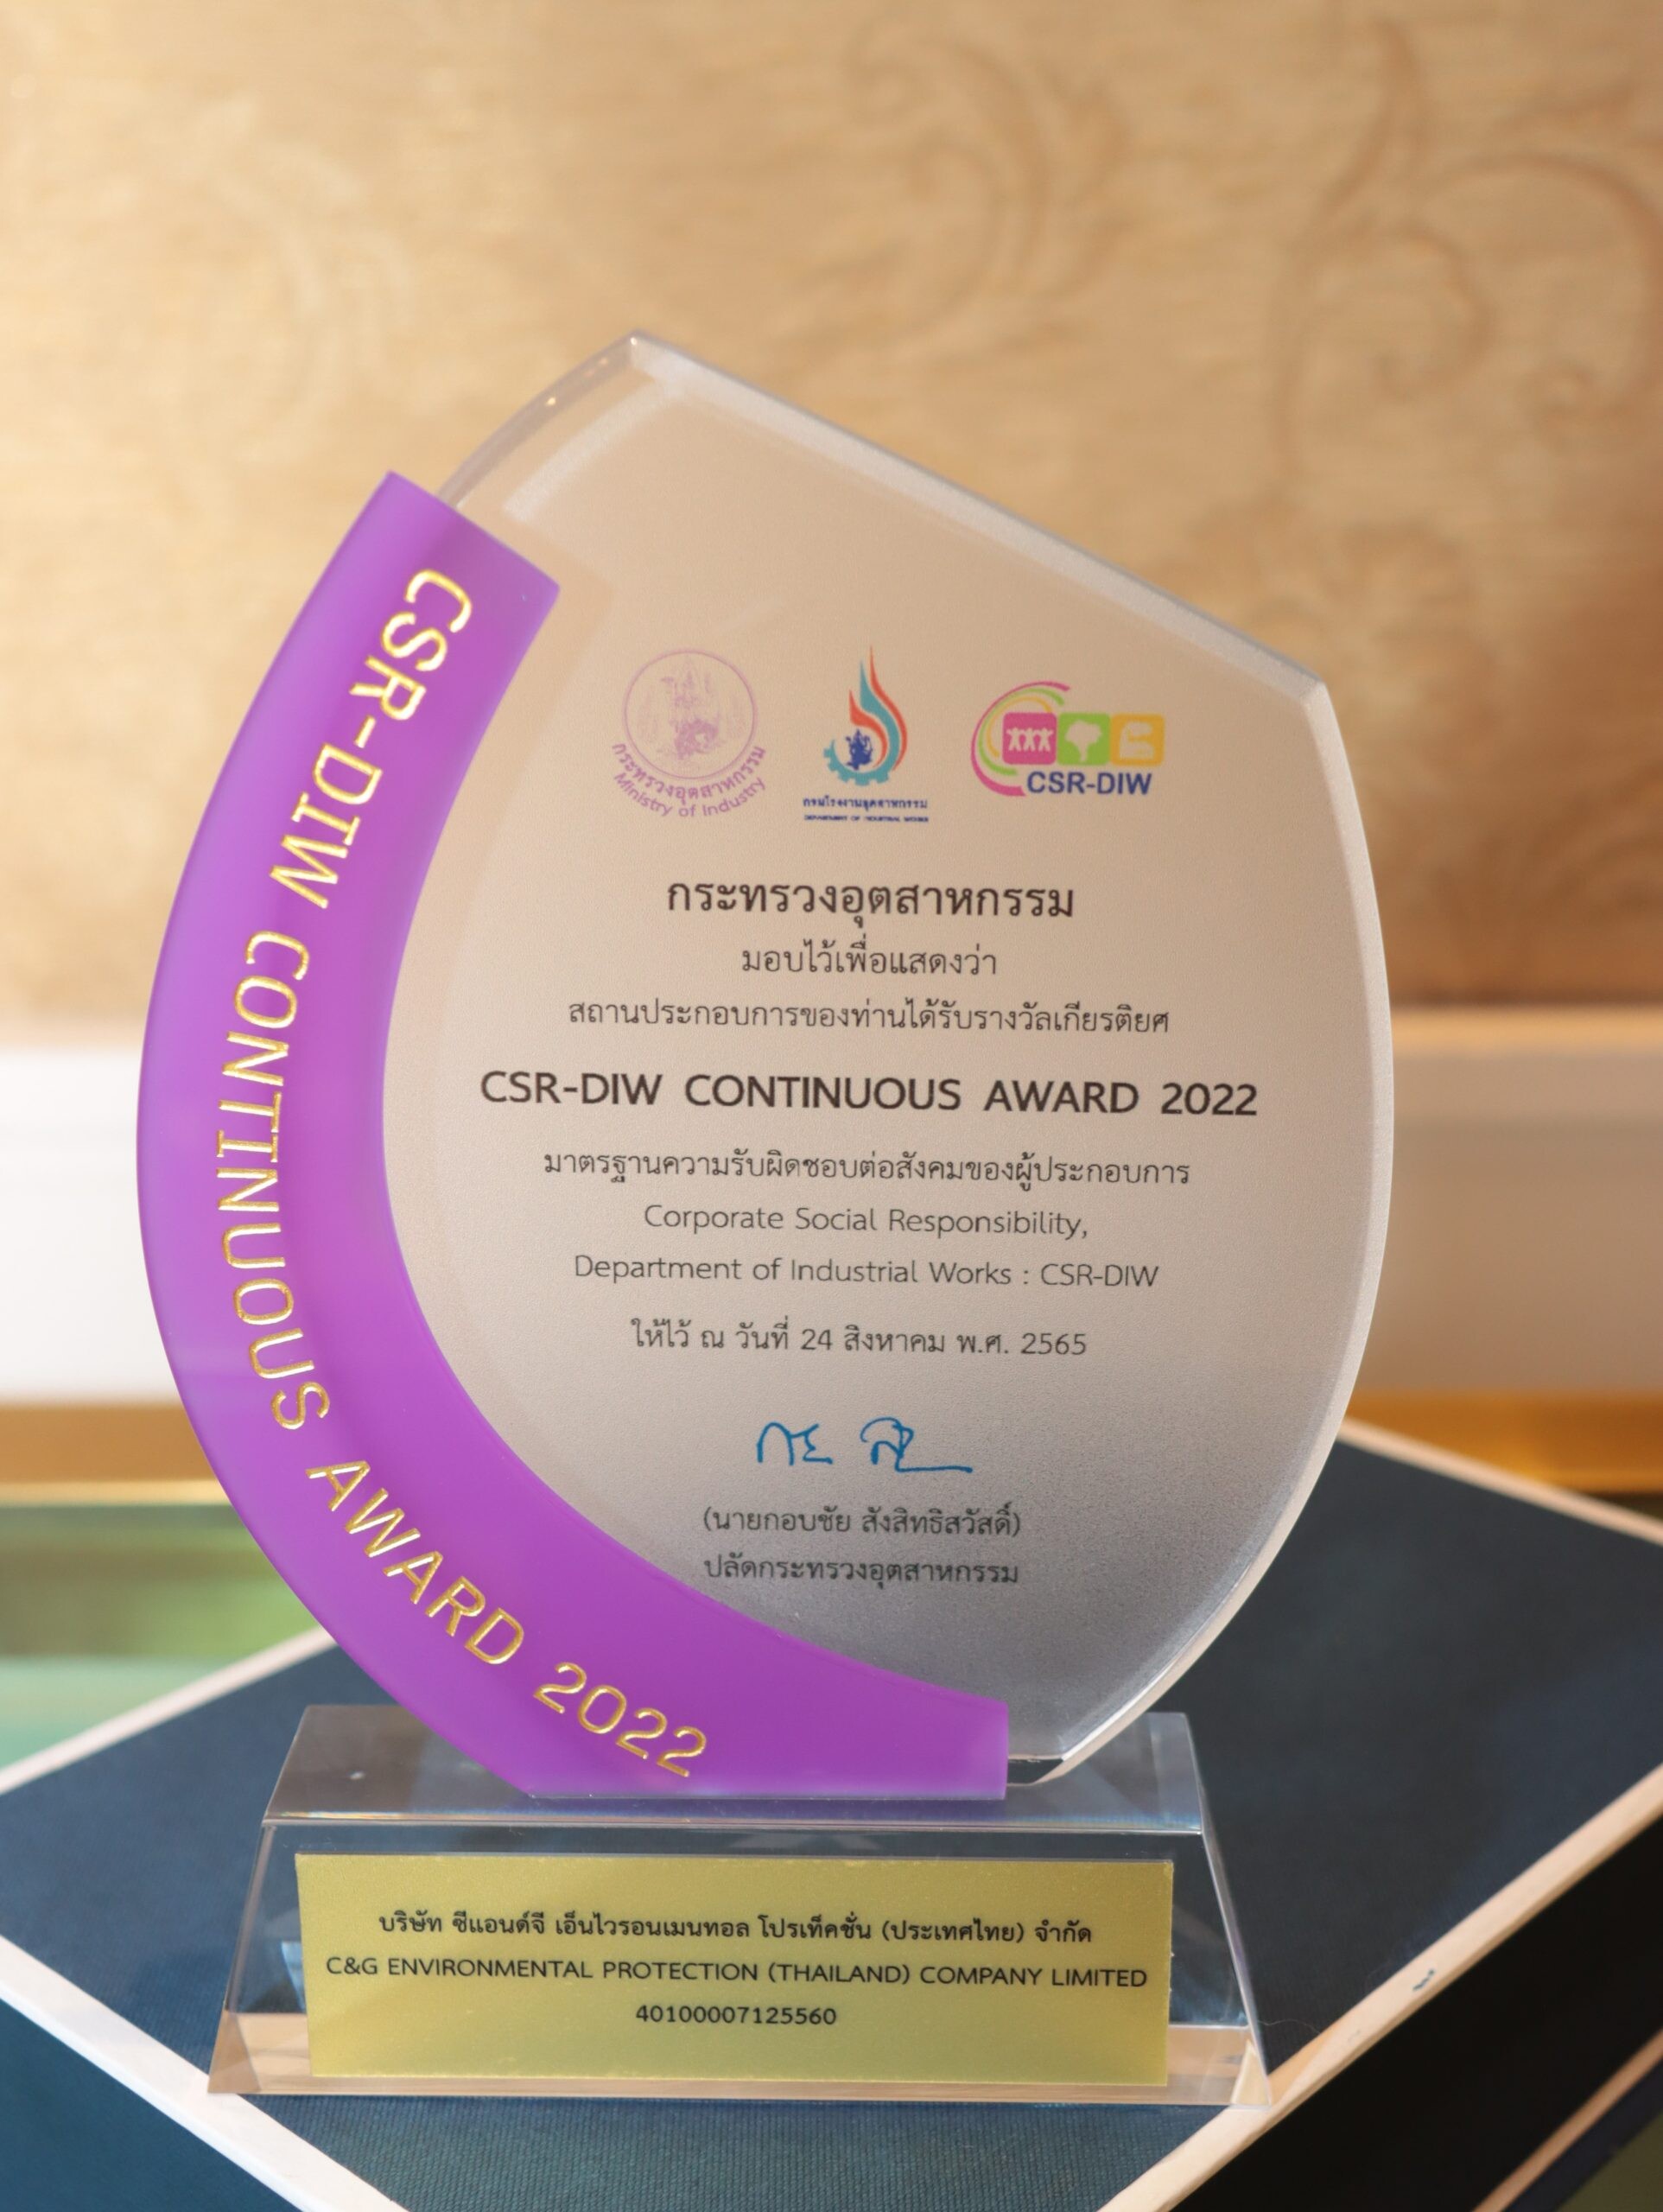 "ซีแอนด์จี" คว้ารางวัล CSR-DIW Continuous Award 2022 ต่อเนื่องเป็นปีที่ 3 ตอกย้ำมาตรฐานดำเนินกิจการด้วยความรับผิดชอบต่อสังคมและชุมชนอย่างยั่งยืน